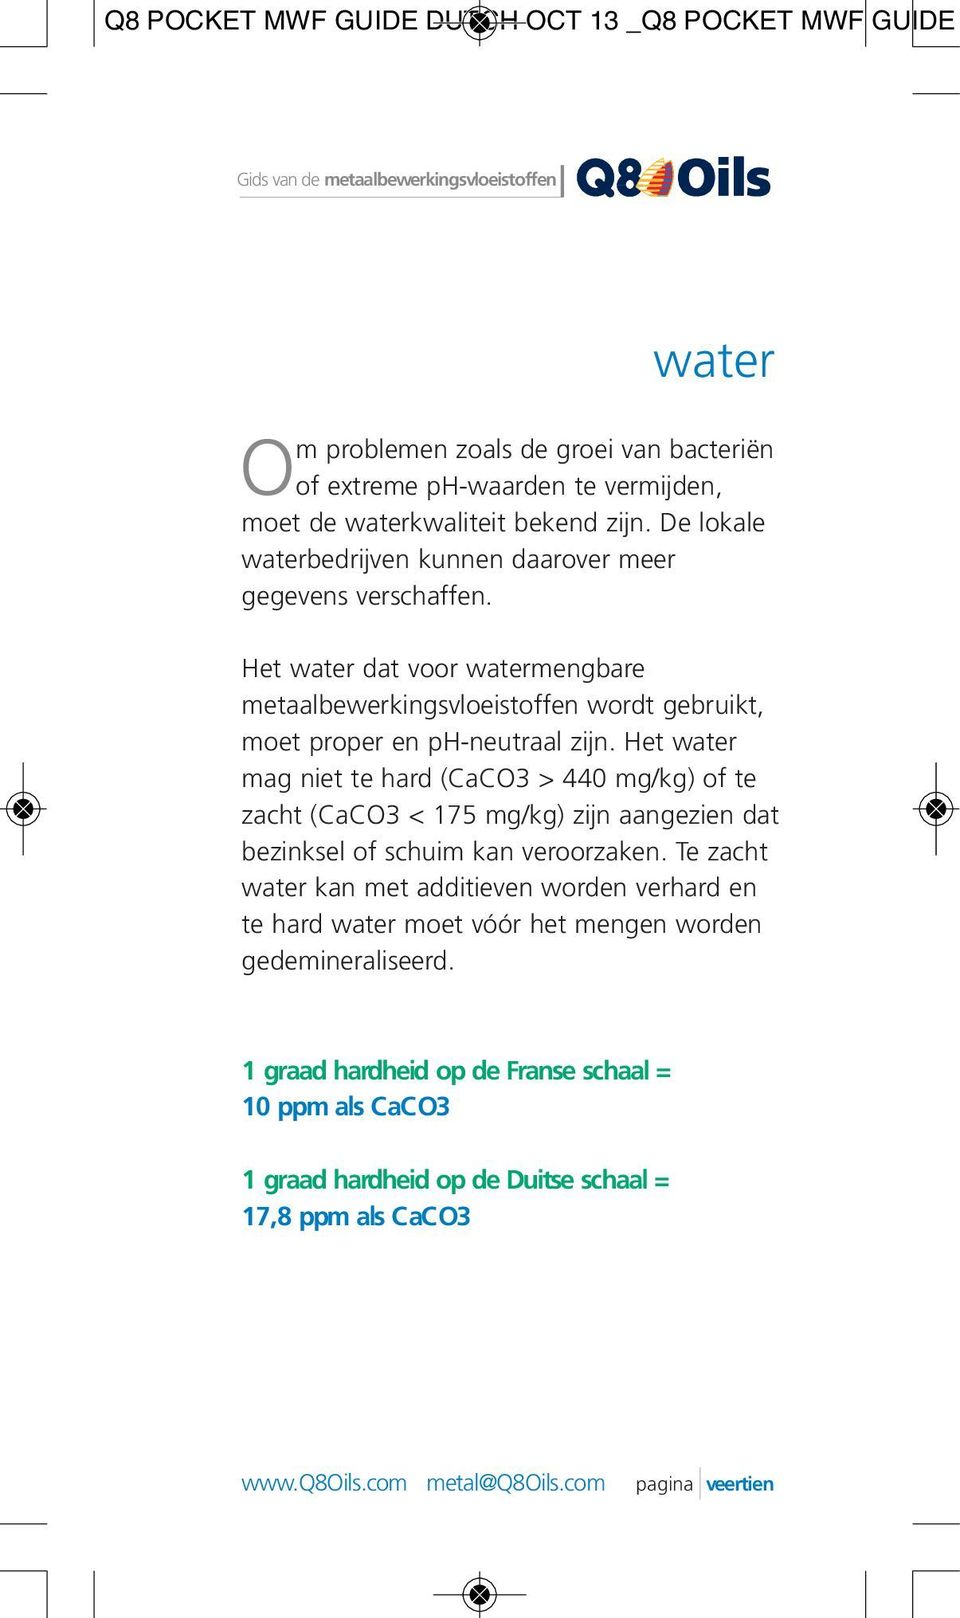 Het water dat voor watermengbare metaalbewerkingsvloeistoffen wordt gebruikt, moet proper en ph-neutraal zijn.